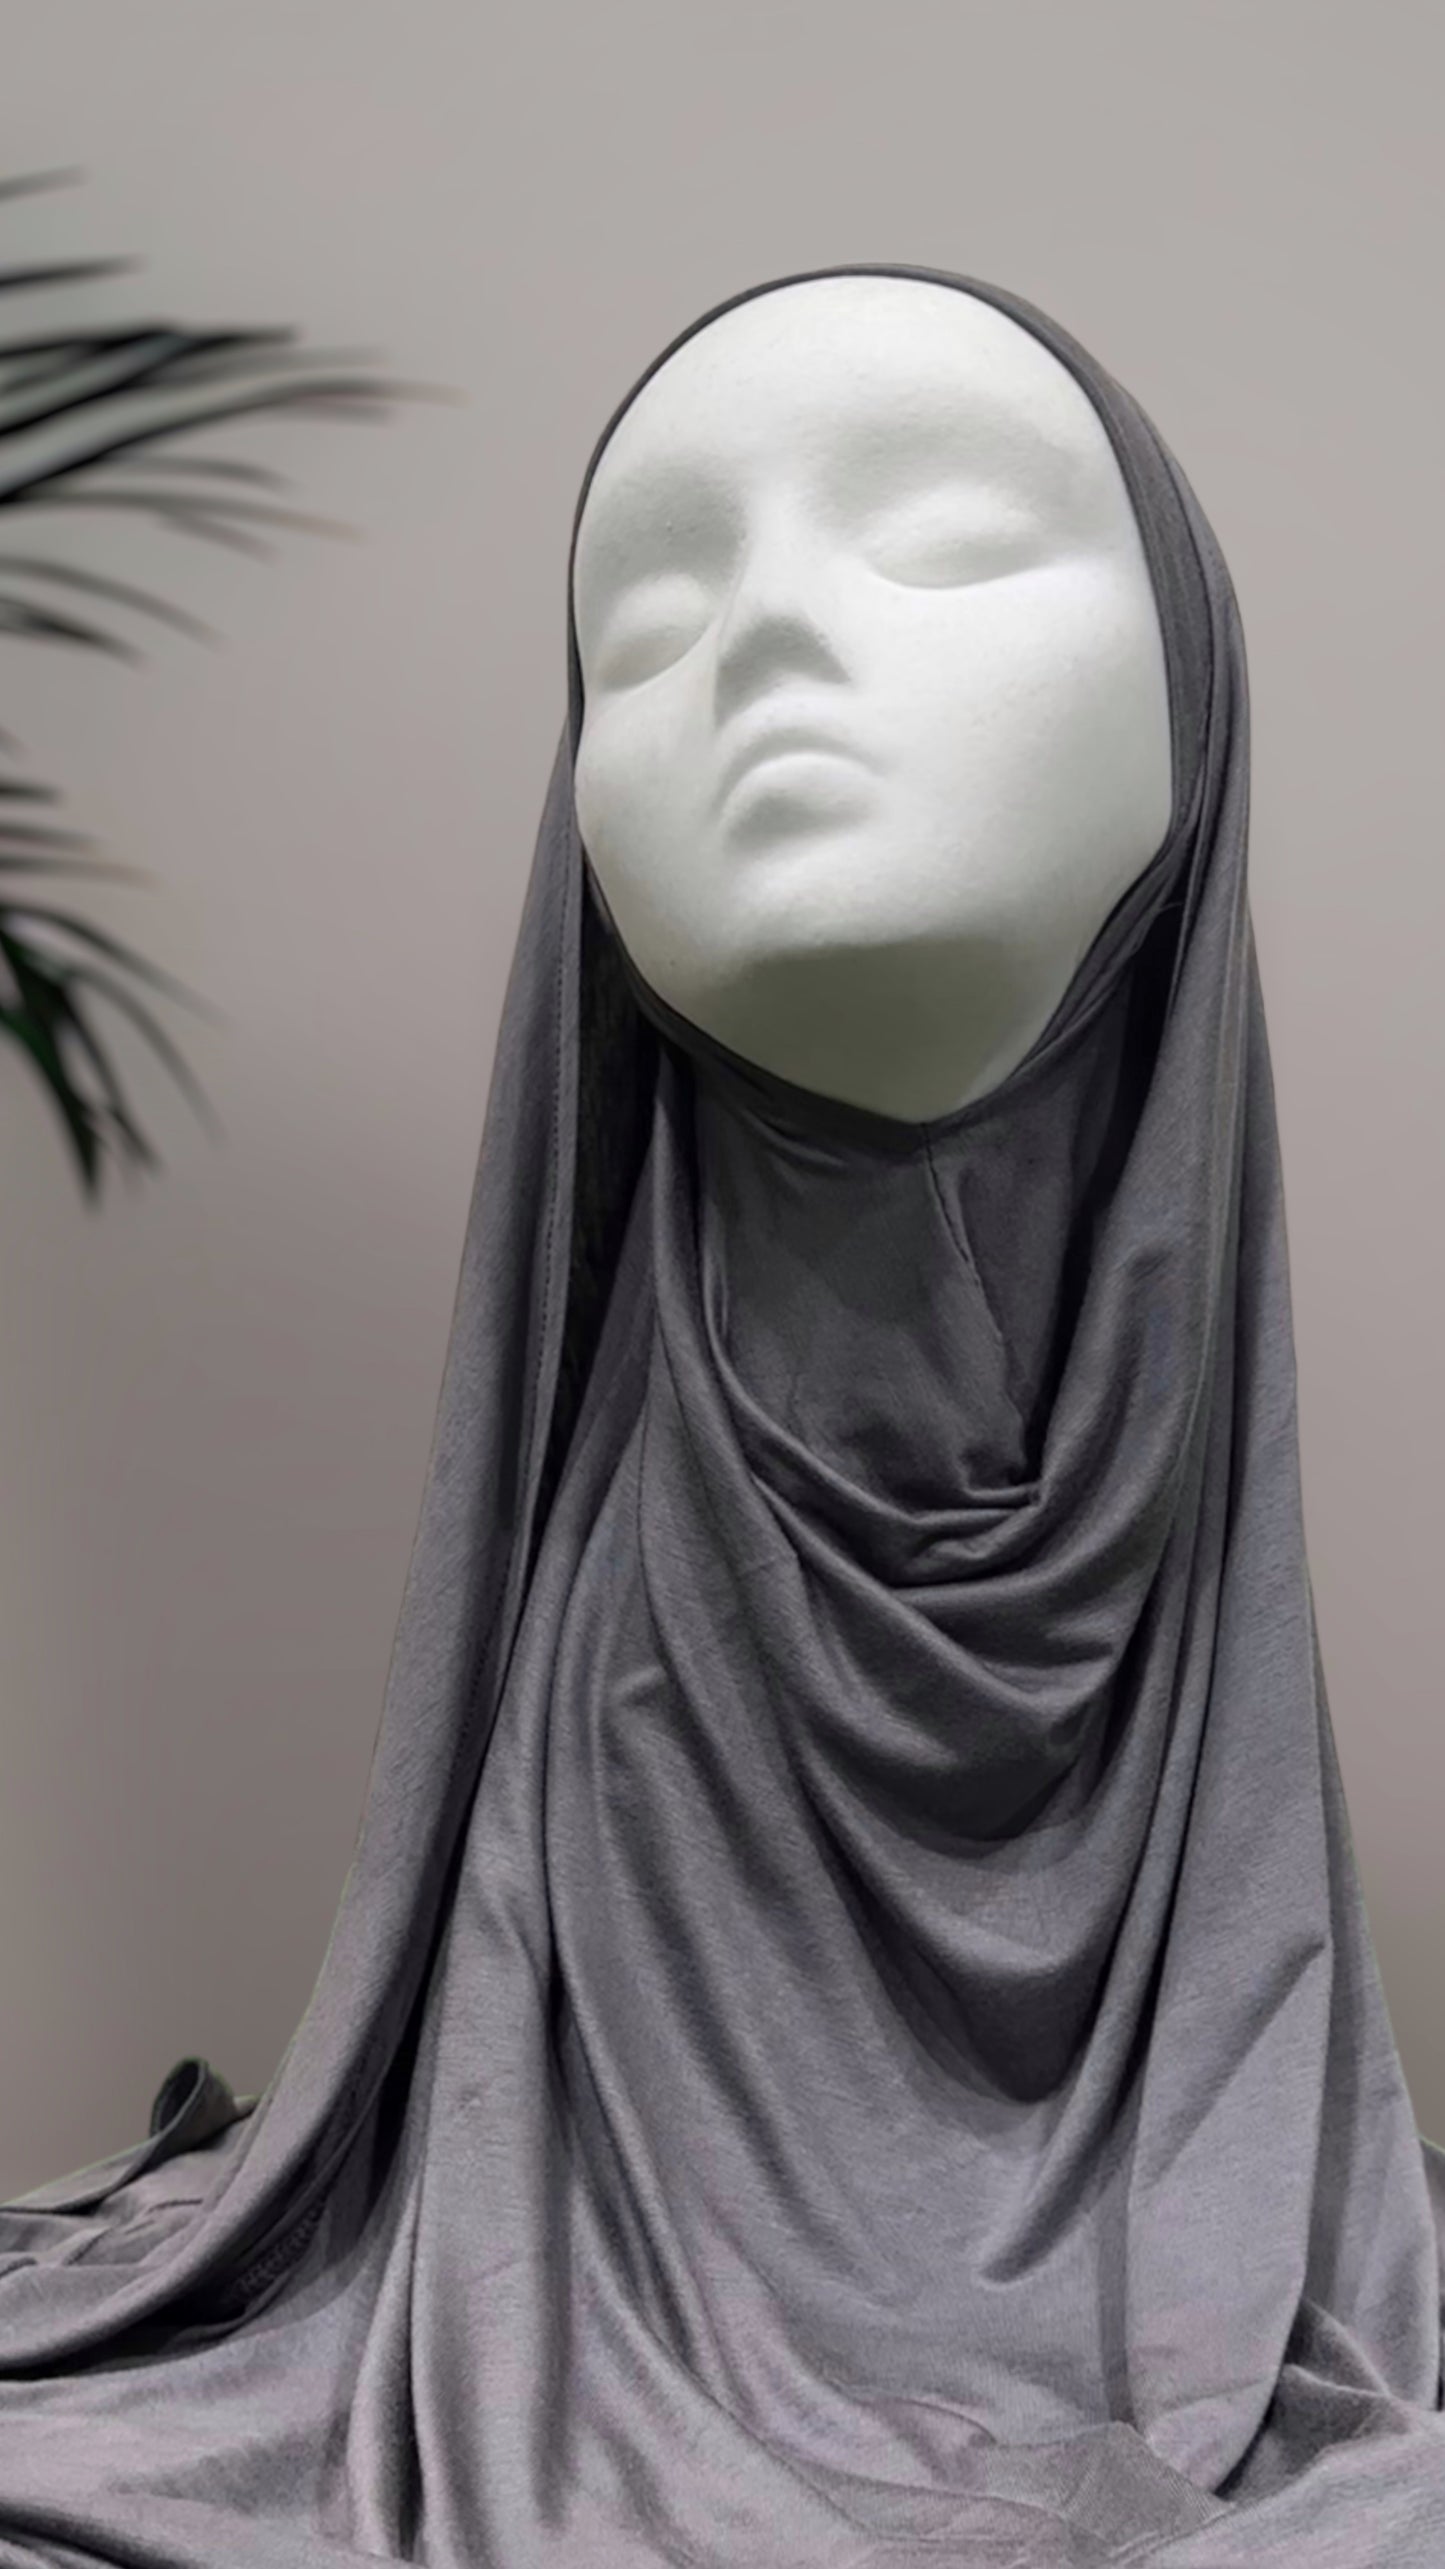 Hijab speciale cuffie o occhiali - Hijab Paradise 